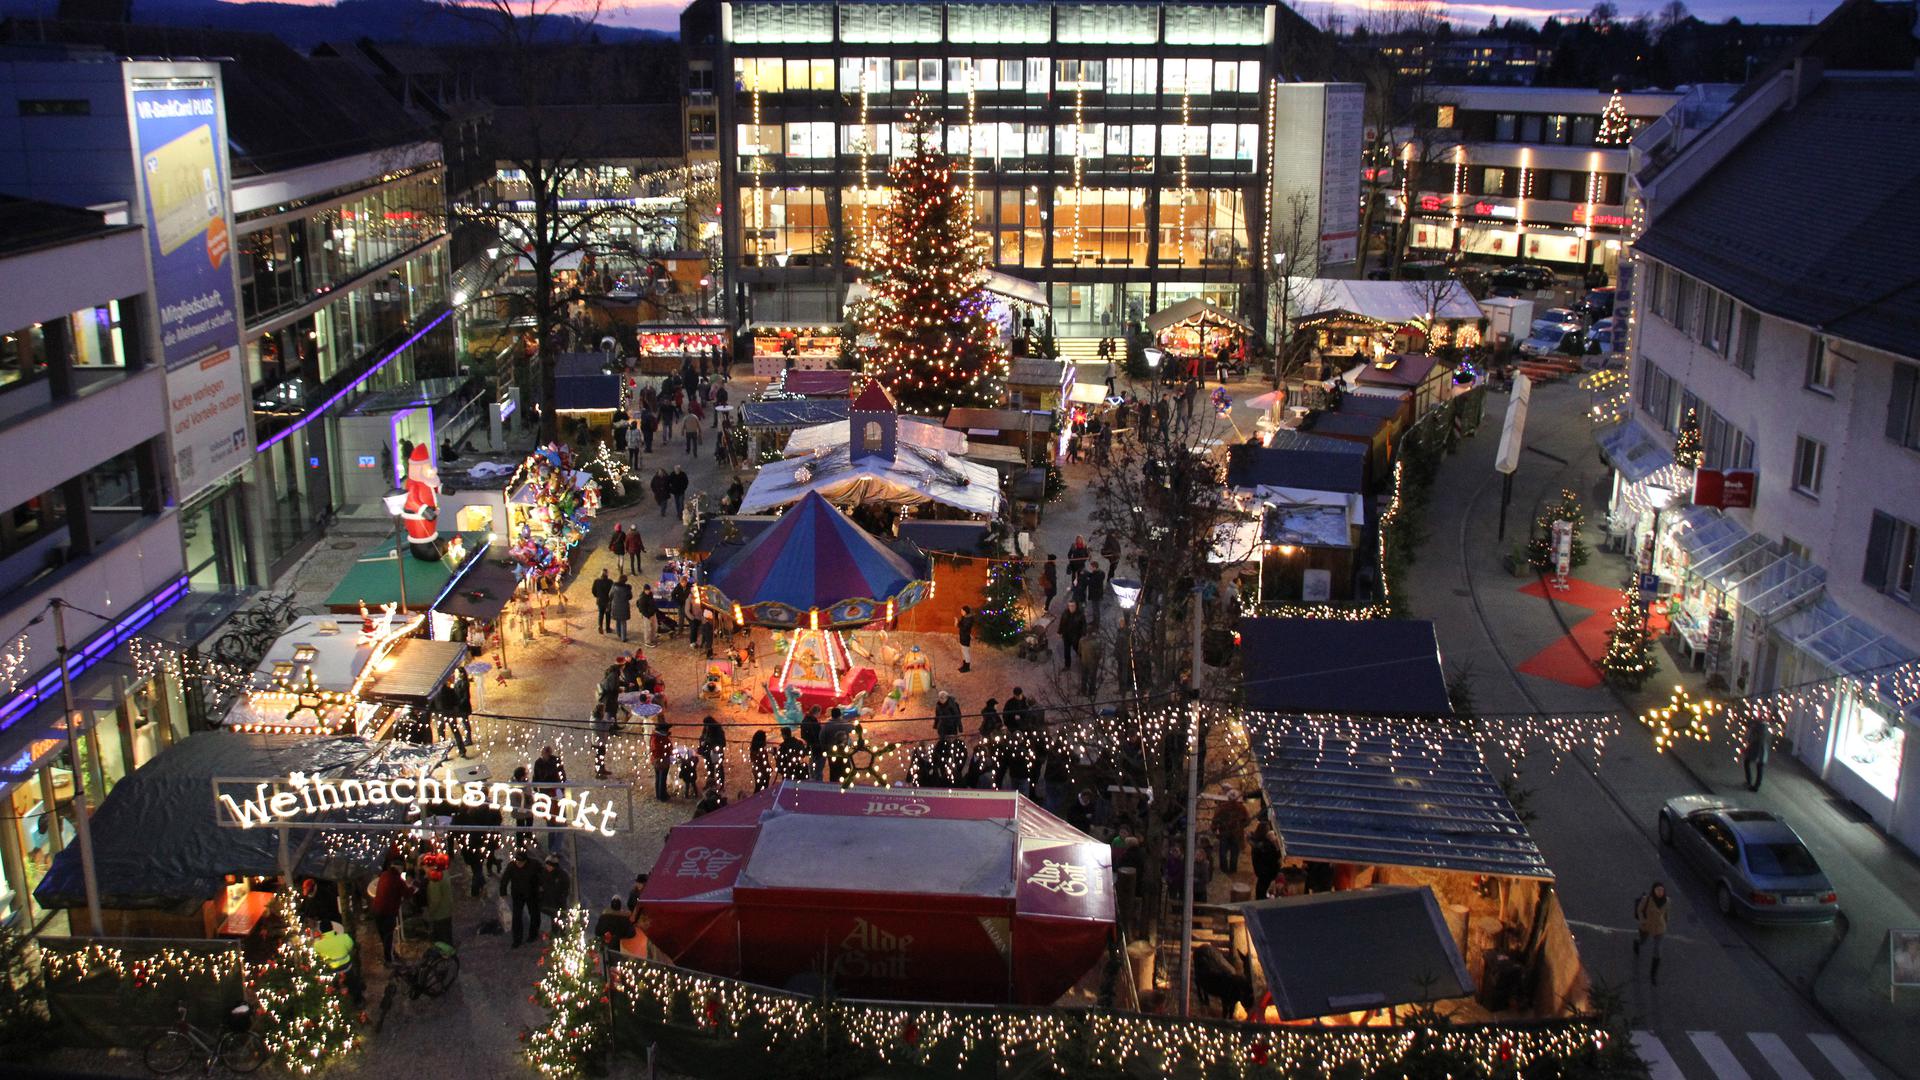 x
Weihnachtsmarkt
Achern 2015